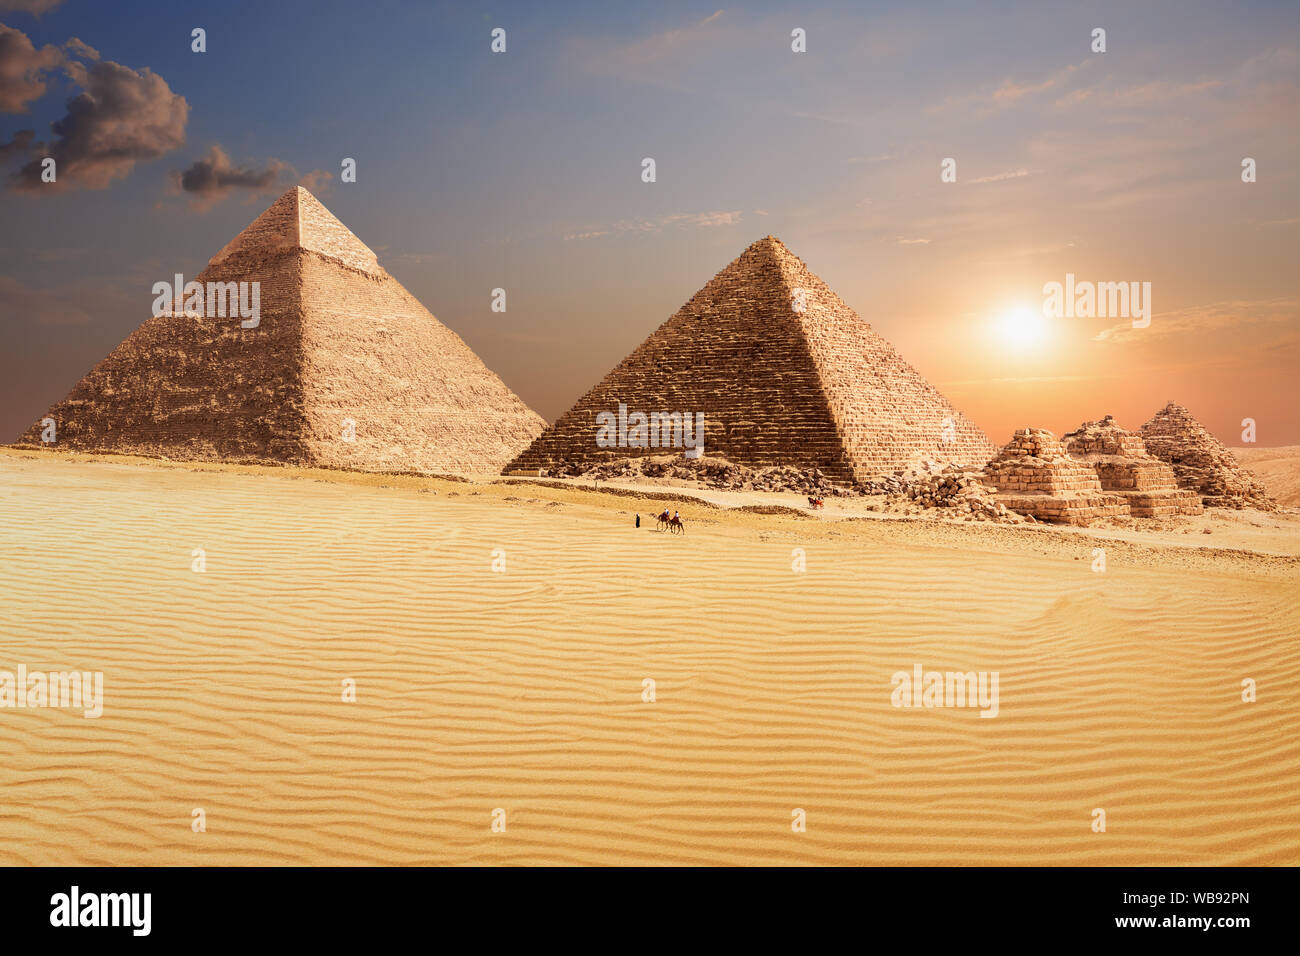 La piramide di Khafre e la piramide di Menkaure in Giza, bellissimo scenario egiziano Foto Stock